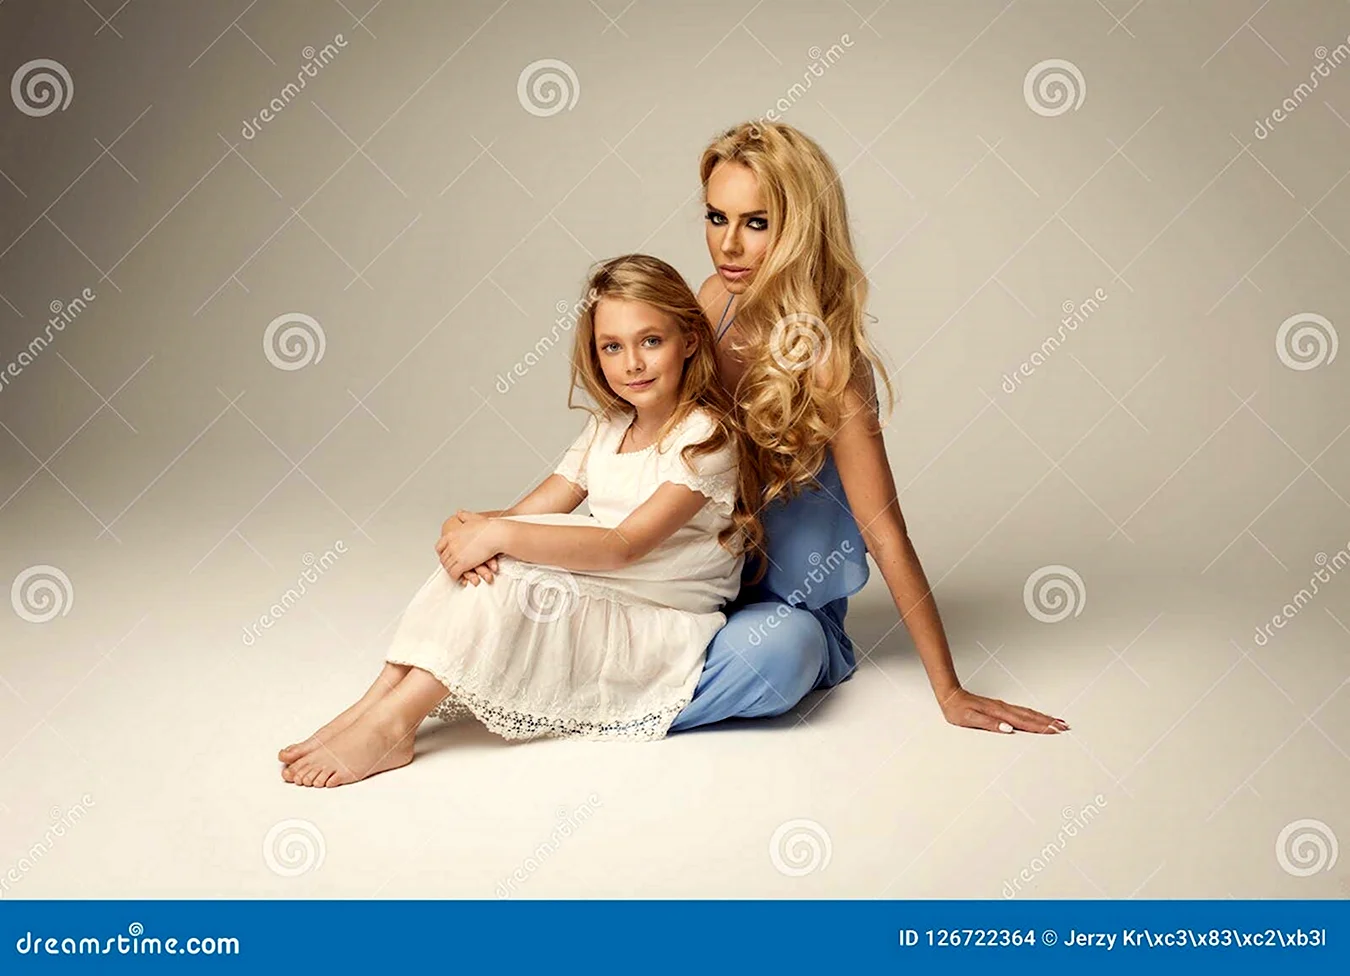 Фотосессия мама и дочка в студии